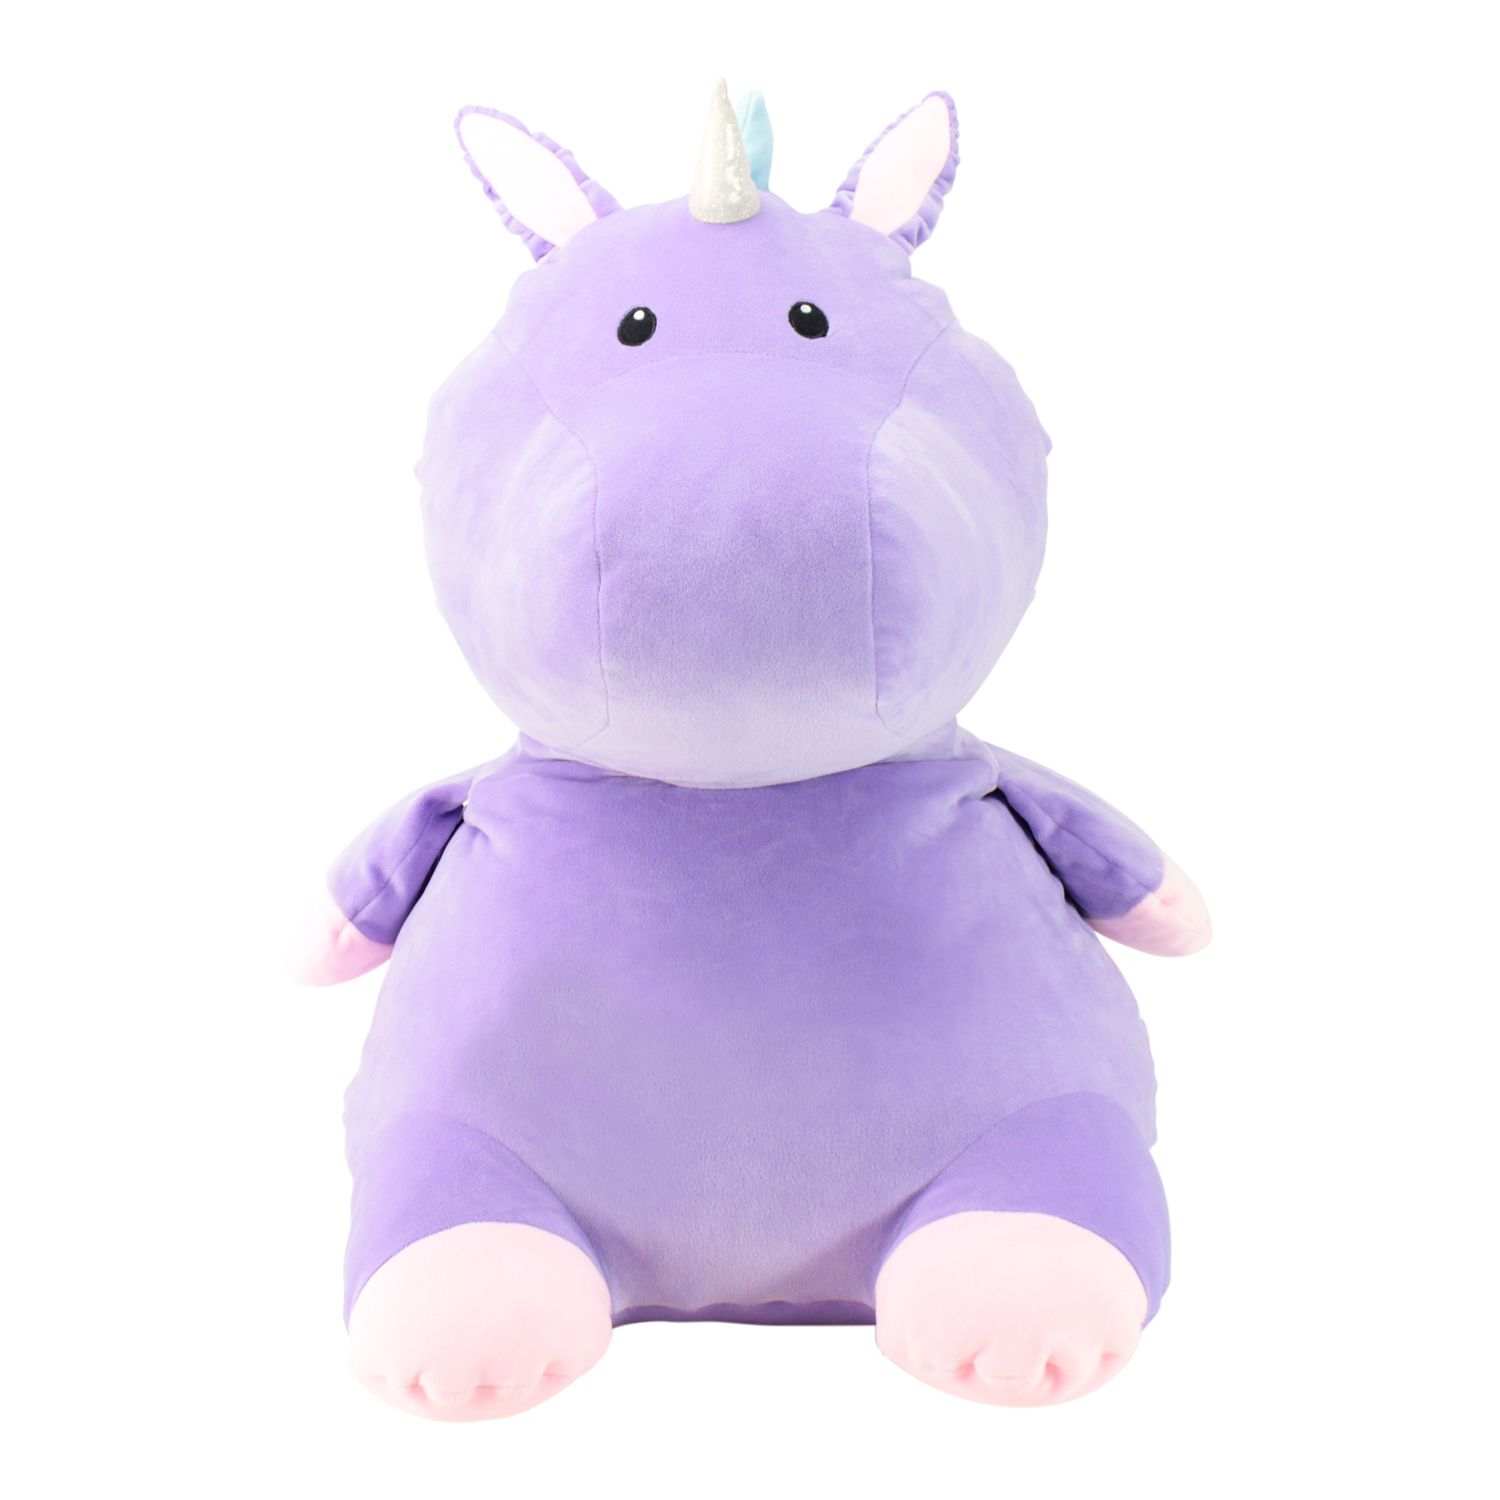 jumbo unicorn stuffed animal